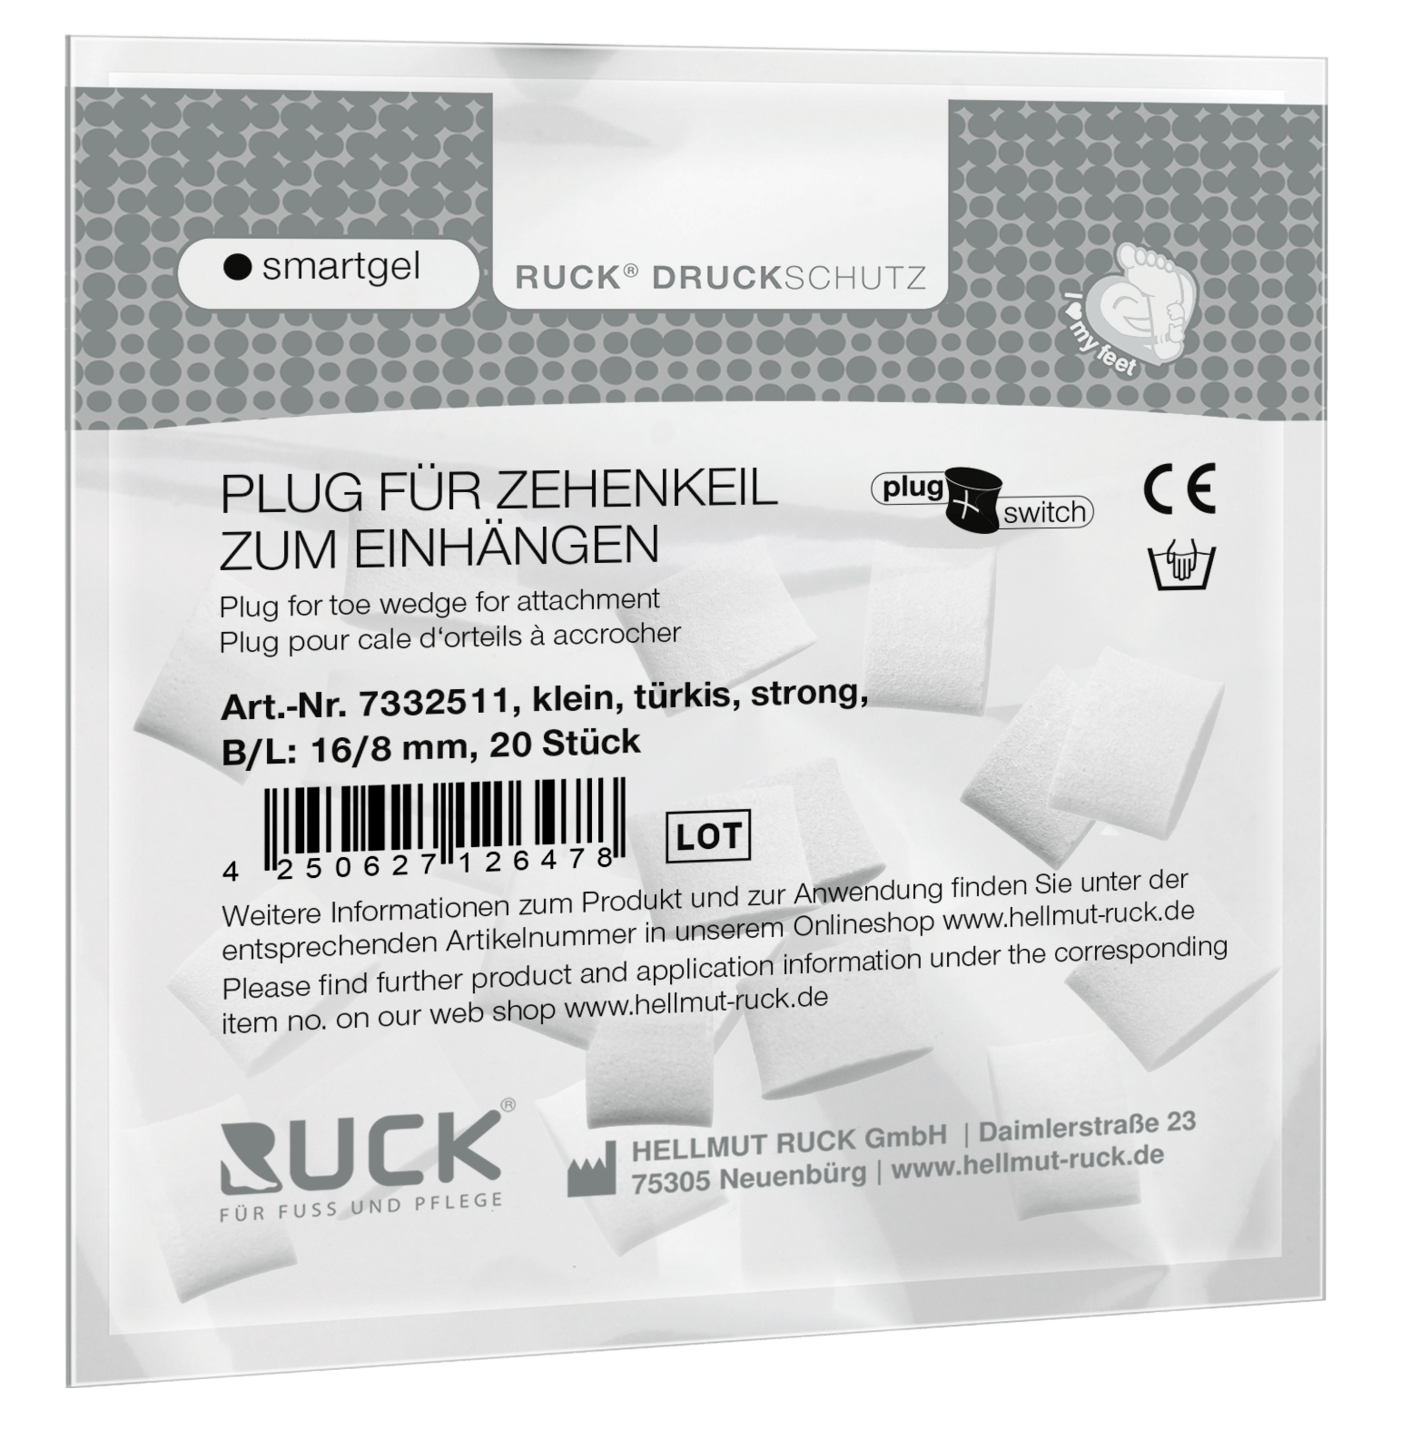 RUCK DRUCKSCHUTZ - Plugs für RUCK® DRUCKSCHUTZ smartgel plug+switch Zehenkeil zum Einhängen in türkis